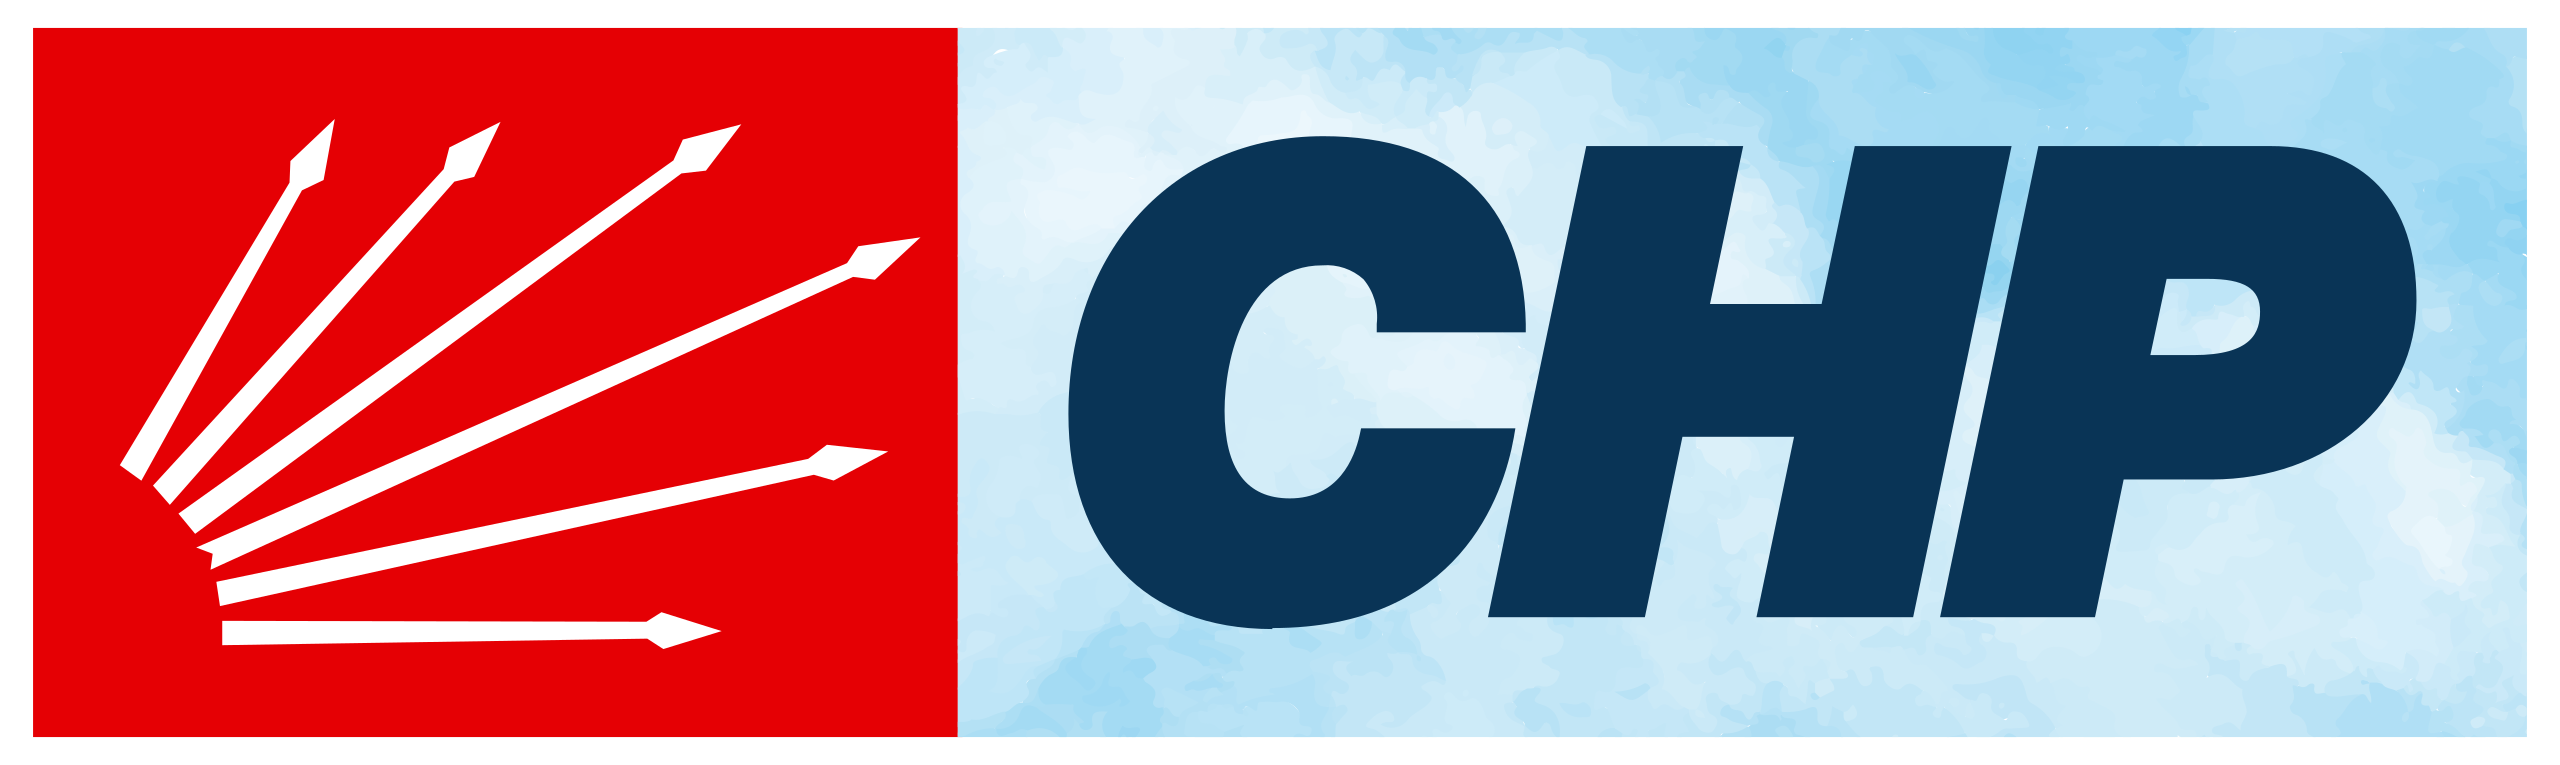 CHP_logo_(horizantal).svg